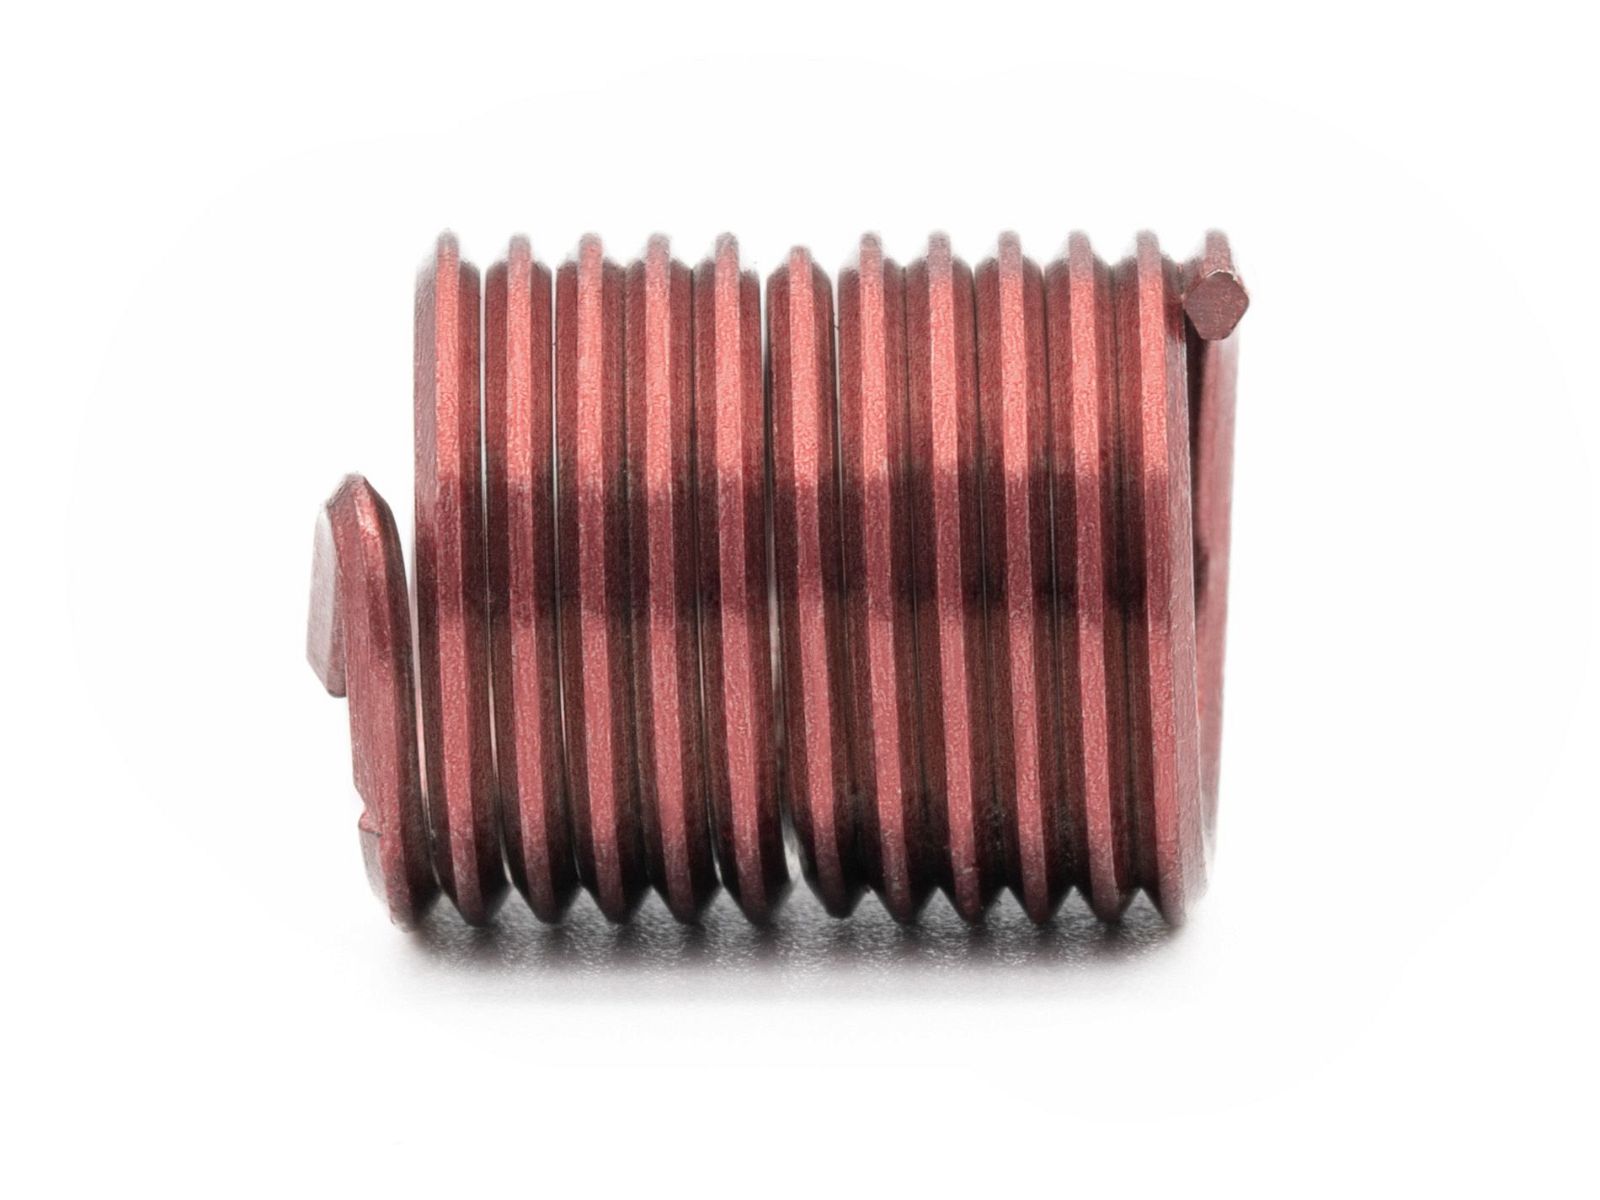 BaerCoil Wire Thread Inserts UNC 7/16 x 14 - 2.0 D (22.23 mm) - screw grip (screw locking) - 100 pcs.